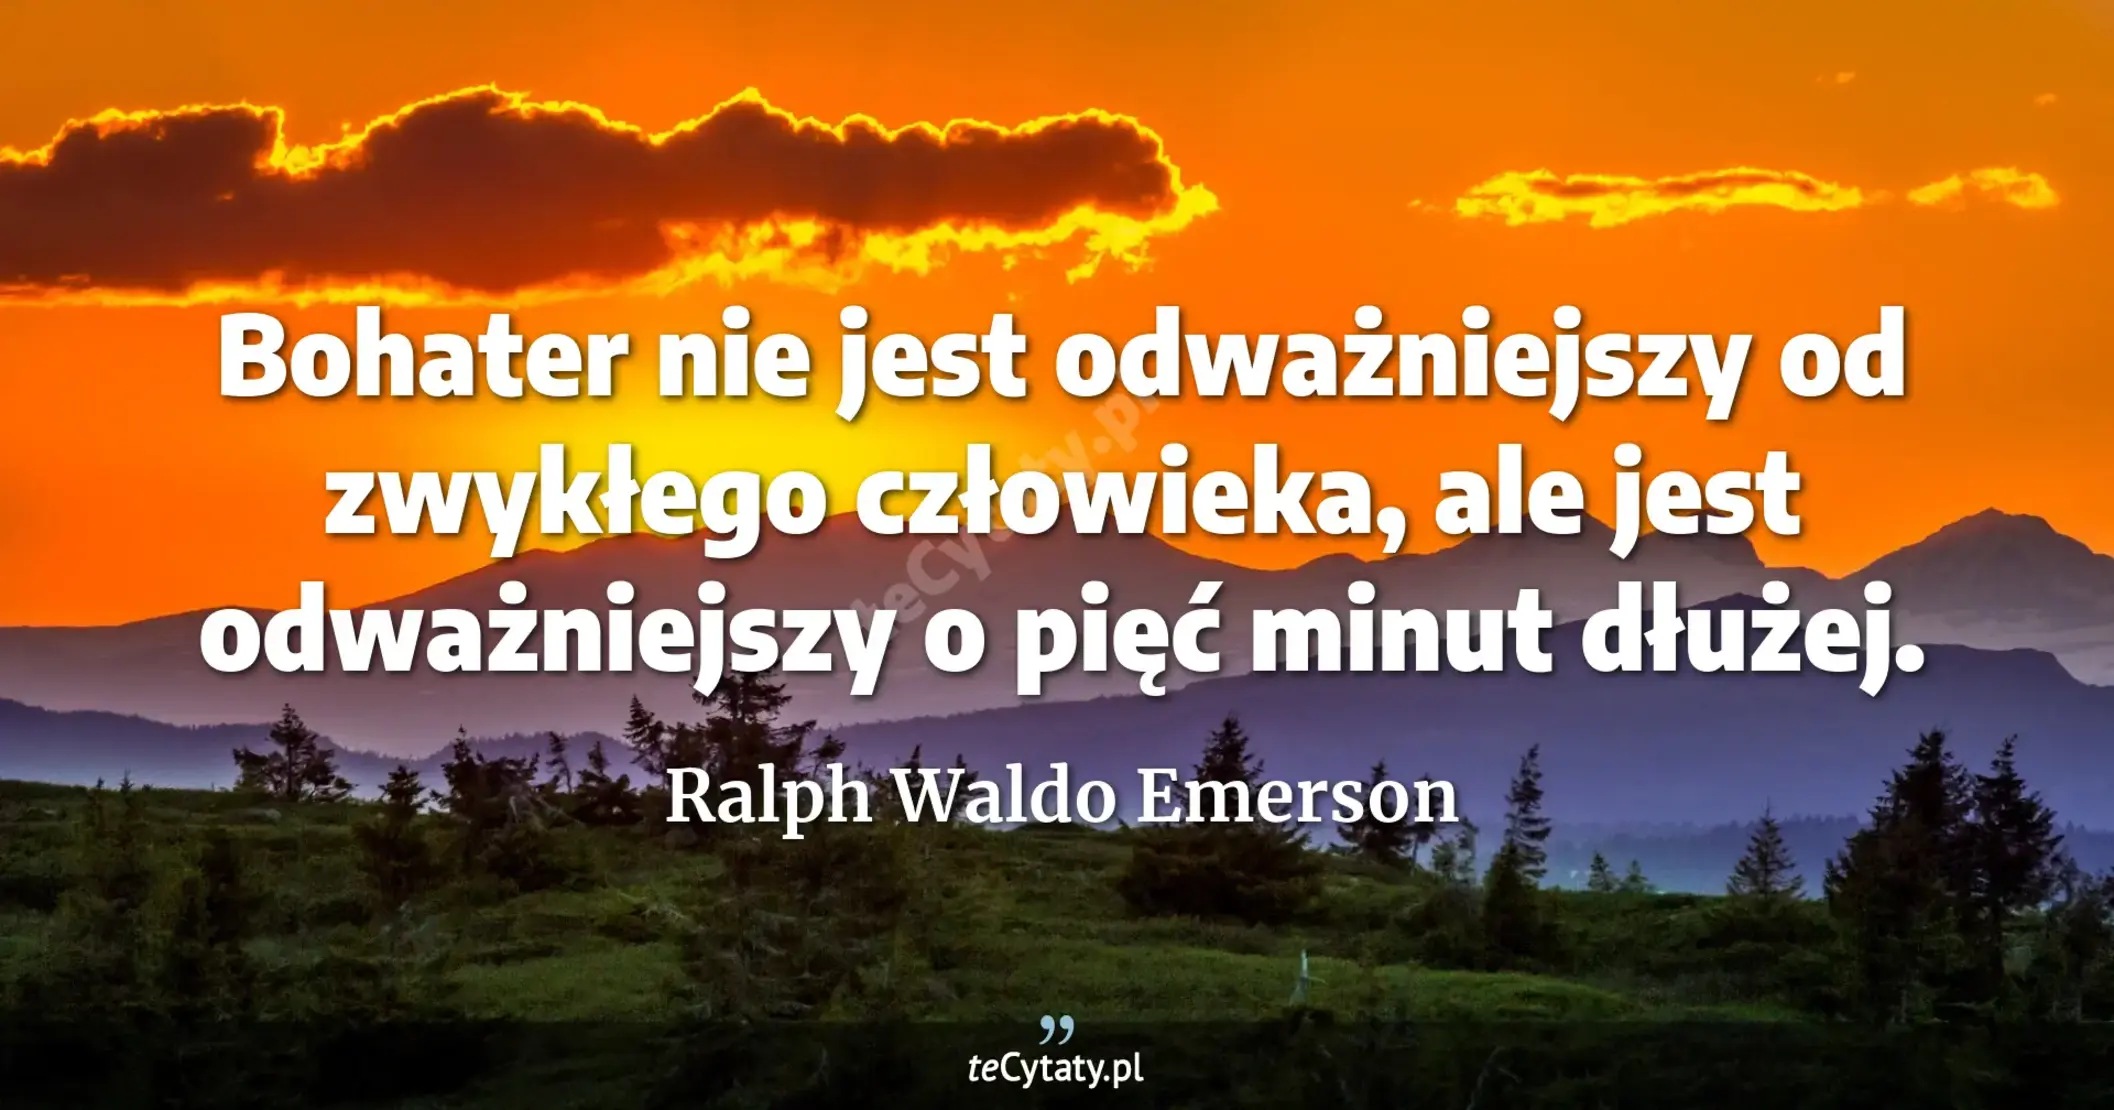 Bohater nie jest odważniejszy od zwykłego człowieka, ale jest odważniejszy o pięć minut dłużej. - Ralph Waldo Emerson